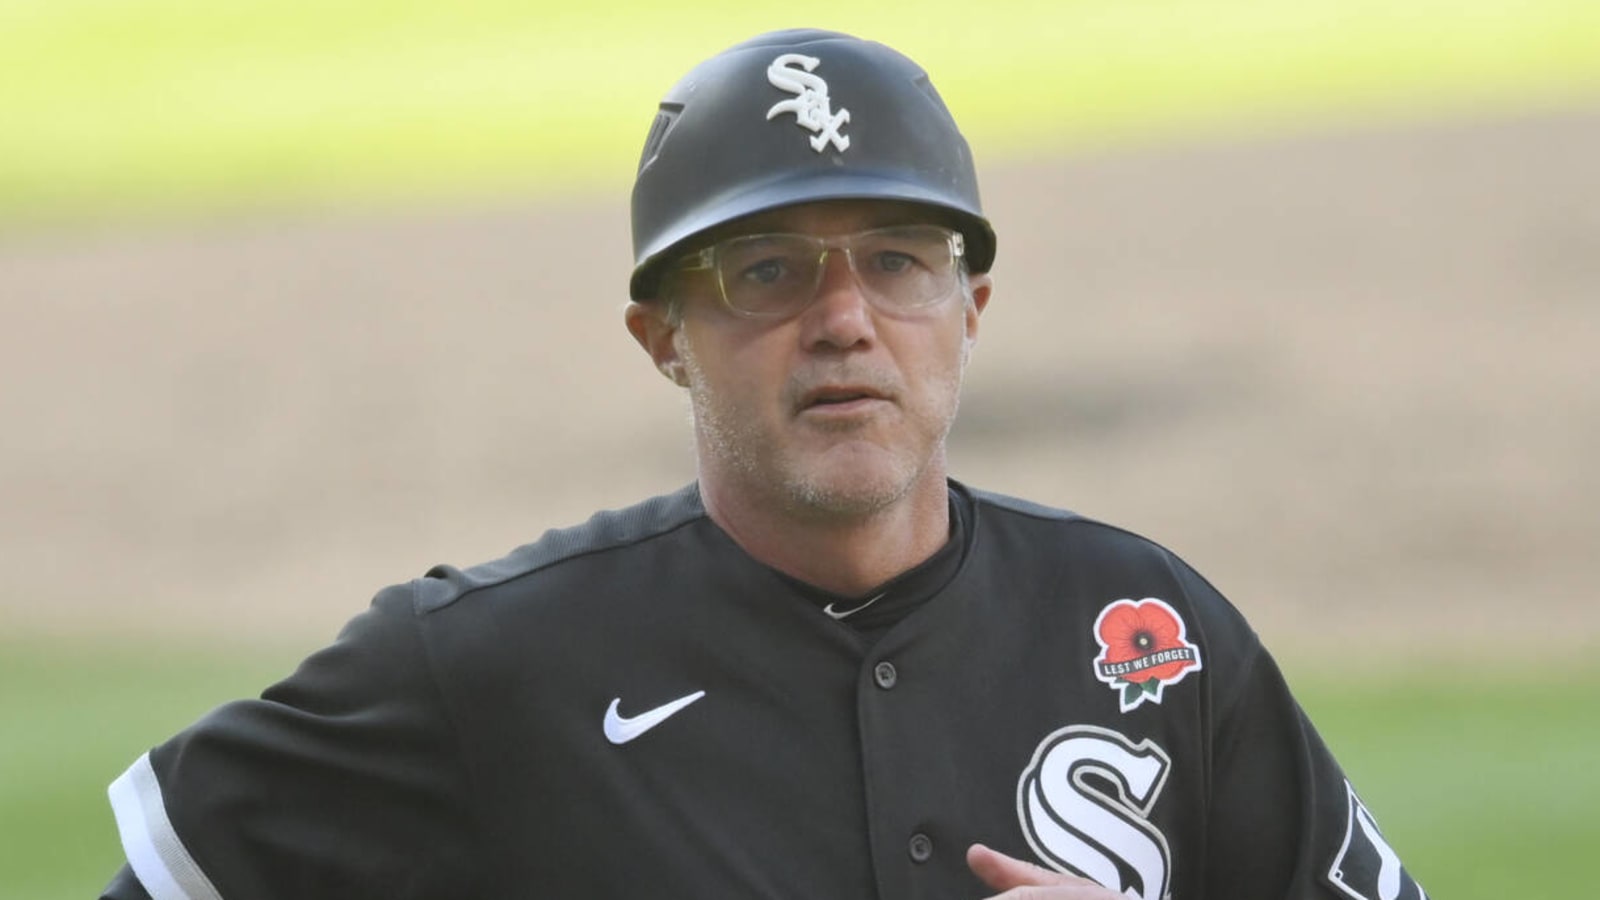 Report: Cardinals hire new bench coach following Matt Holliday's resignation